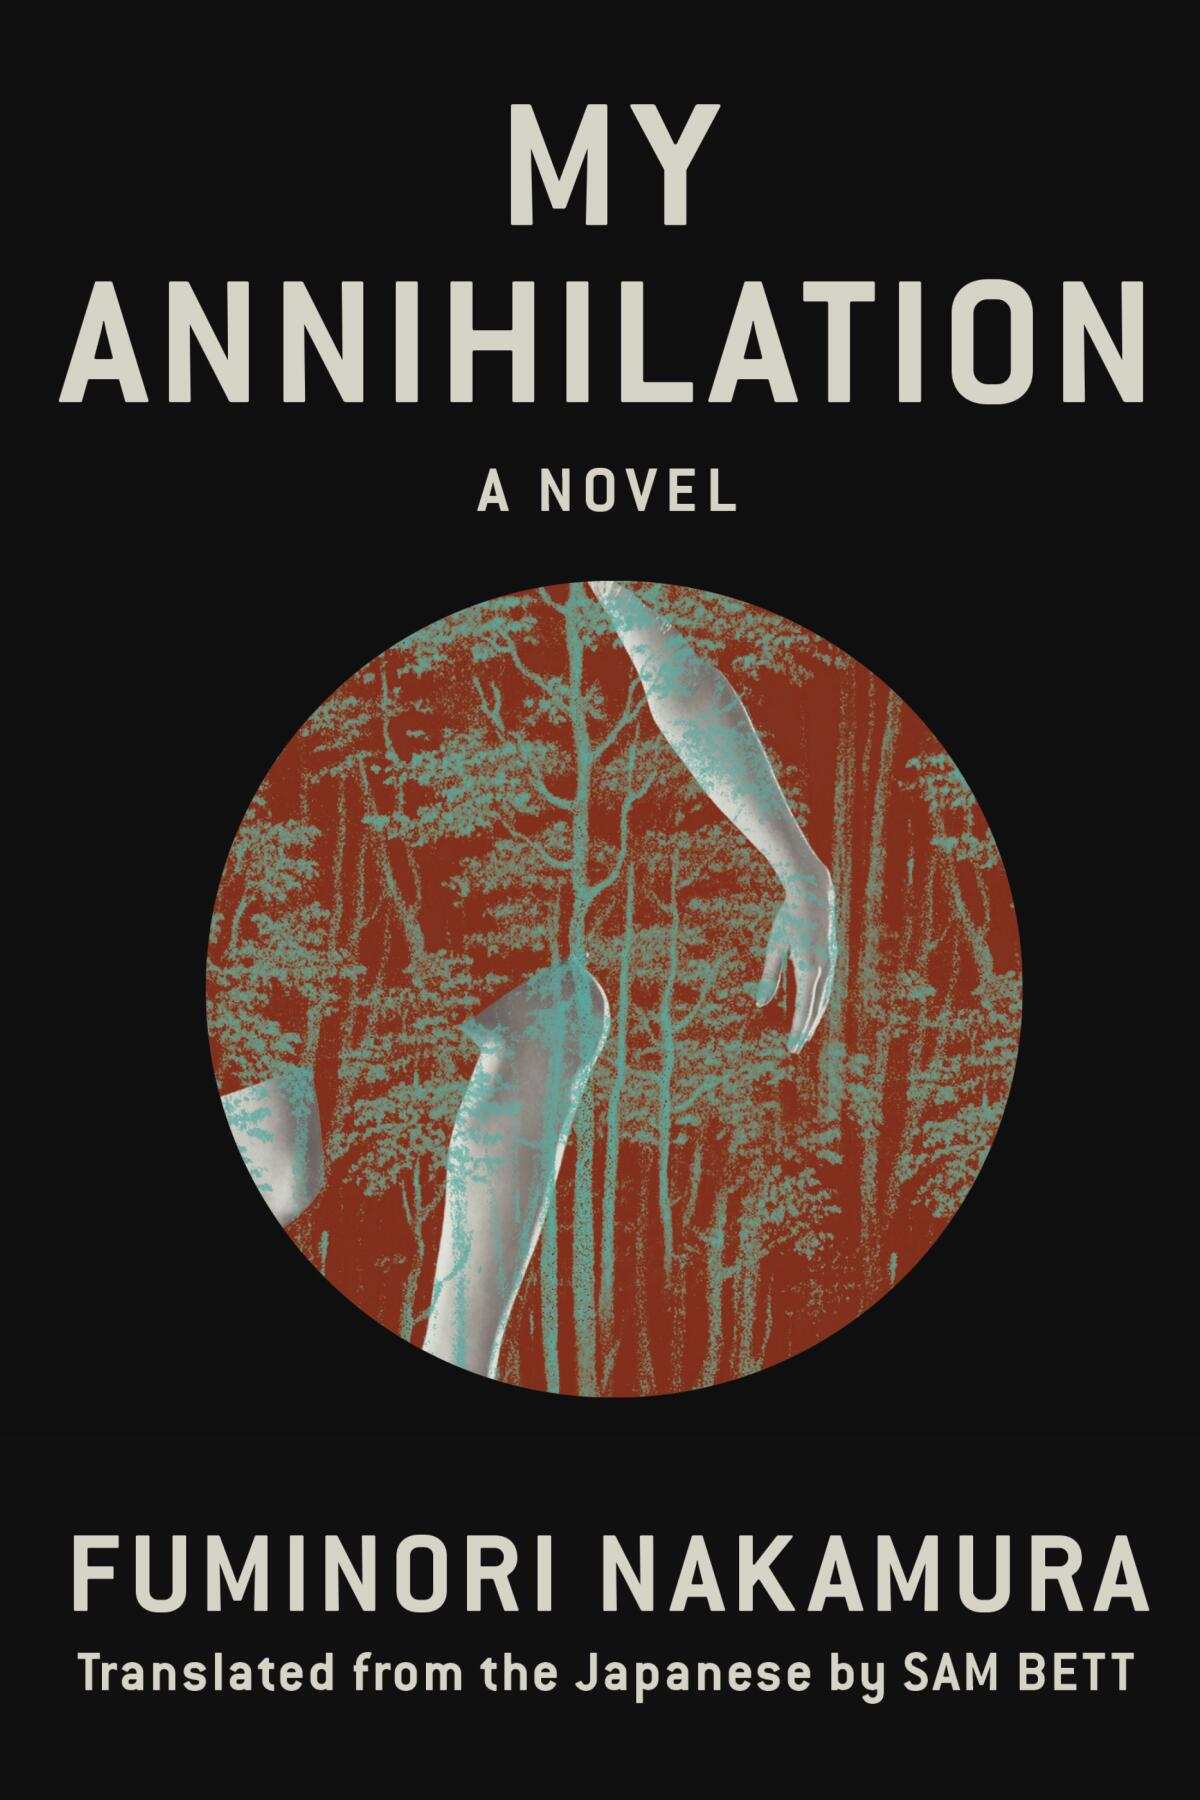 "My Annihilation," by Fuminori Nakamura